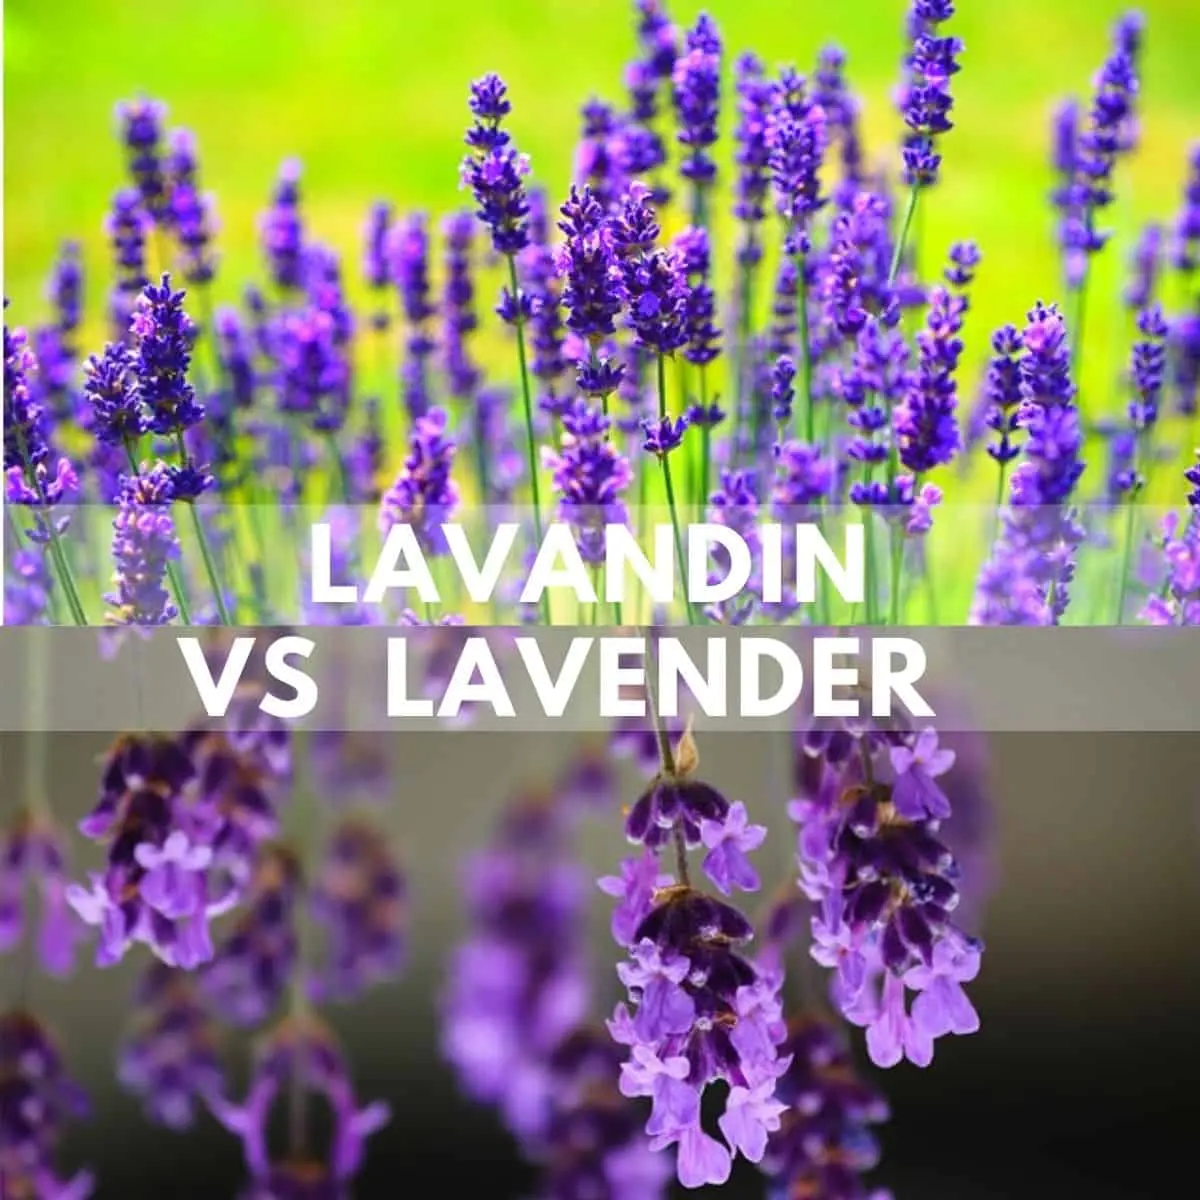 Lavandin vs Lavender